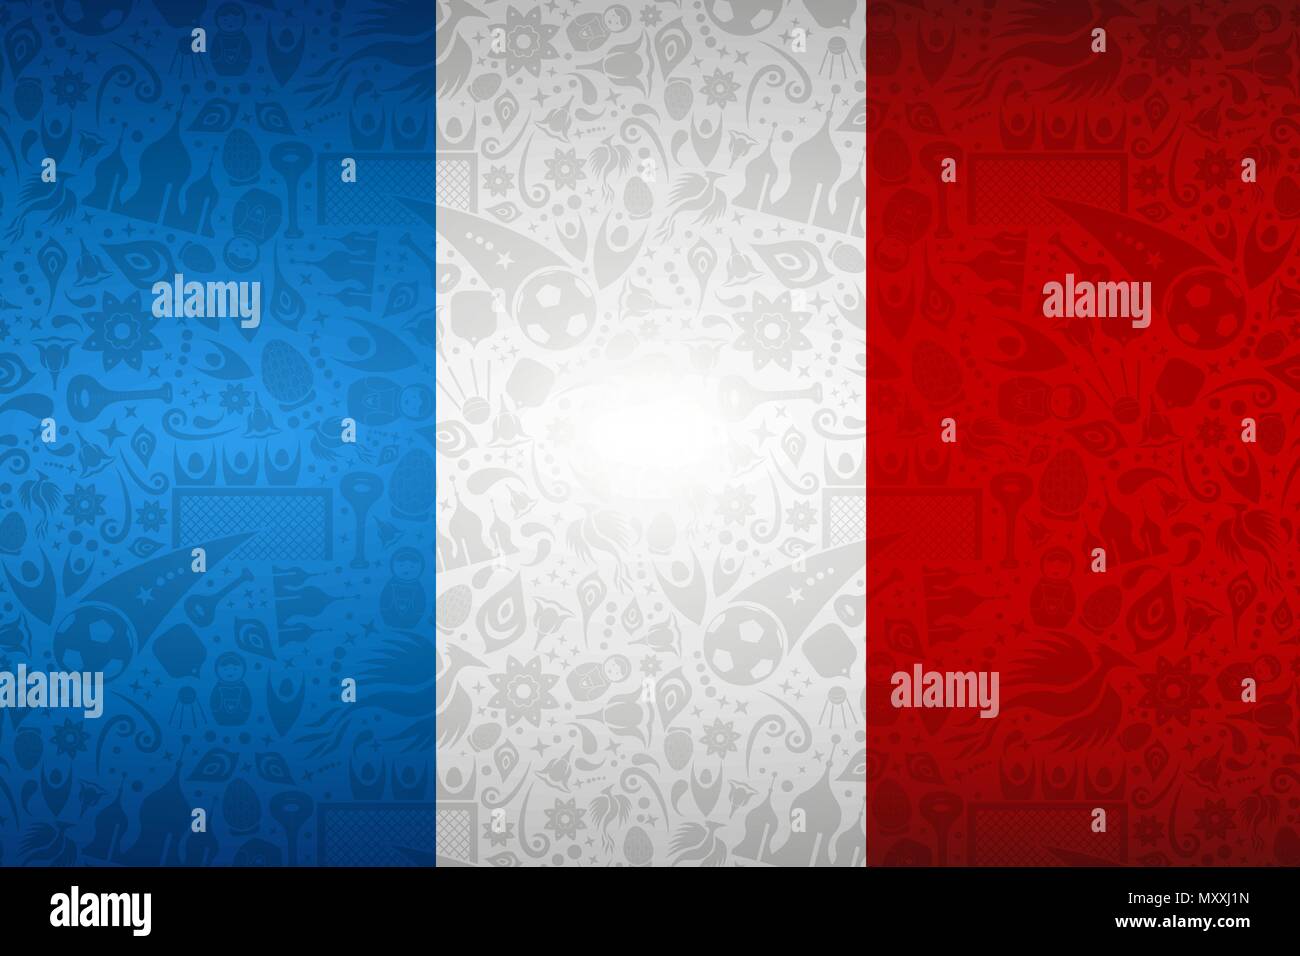 Flagge Frankreich Symbol Hintergrund für besondere Fußball-Sport Ereignis. Mit russischen Stil Ikonen. EPS 10 Vektor. Stock Vektor